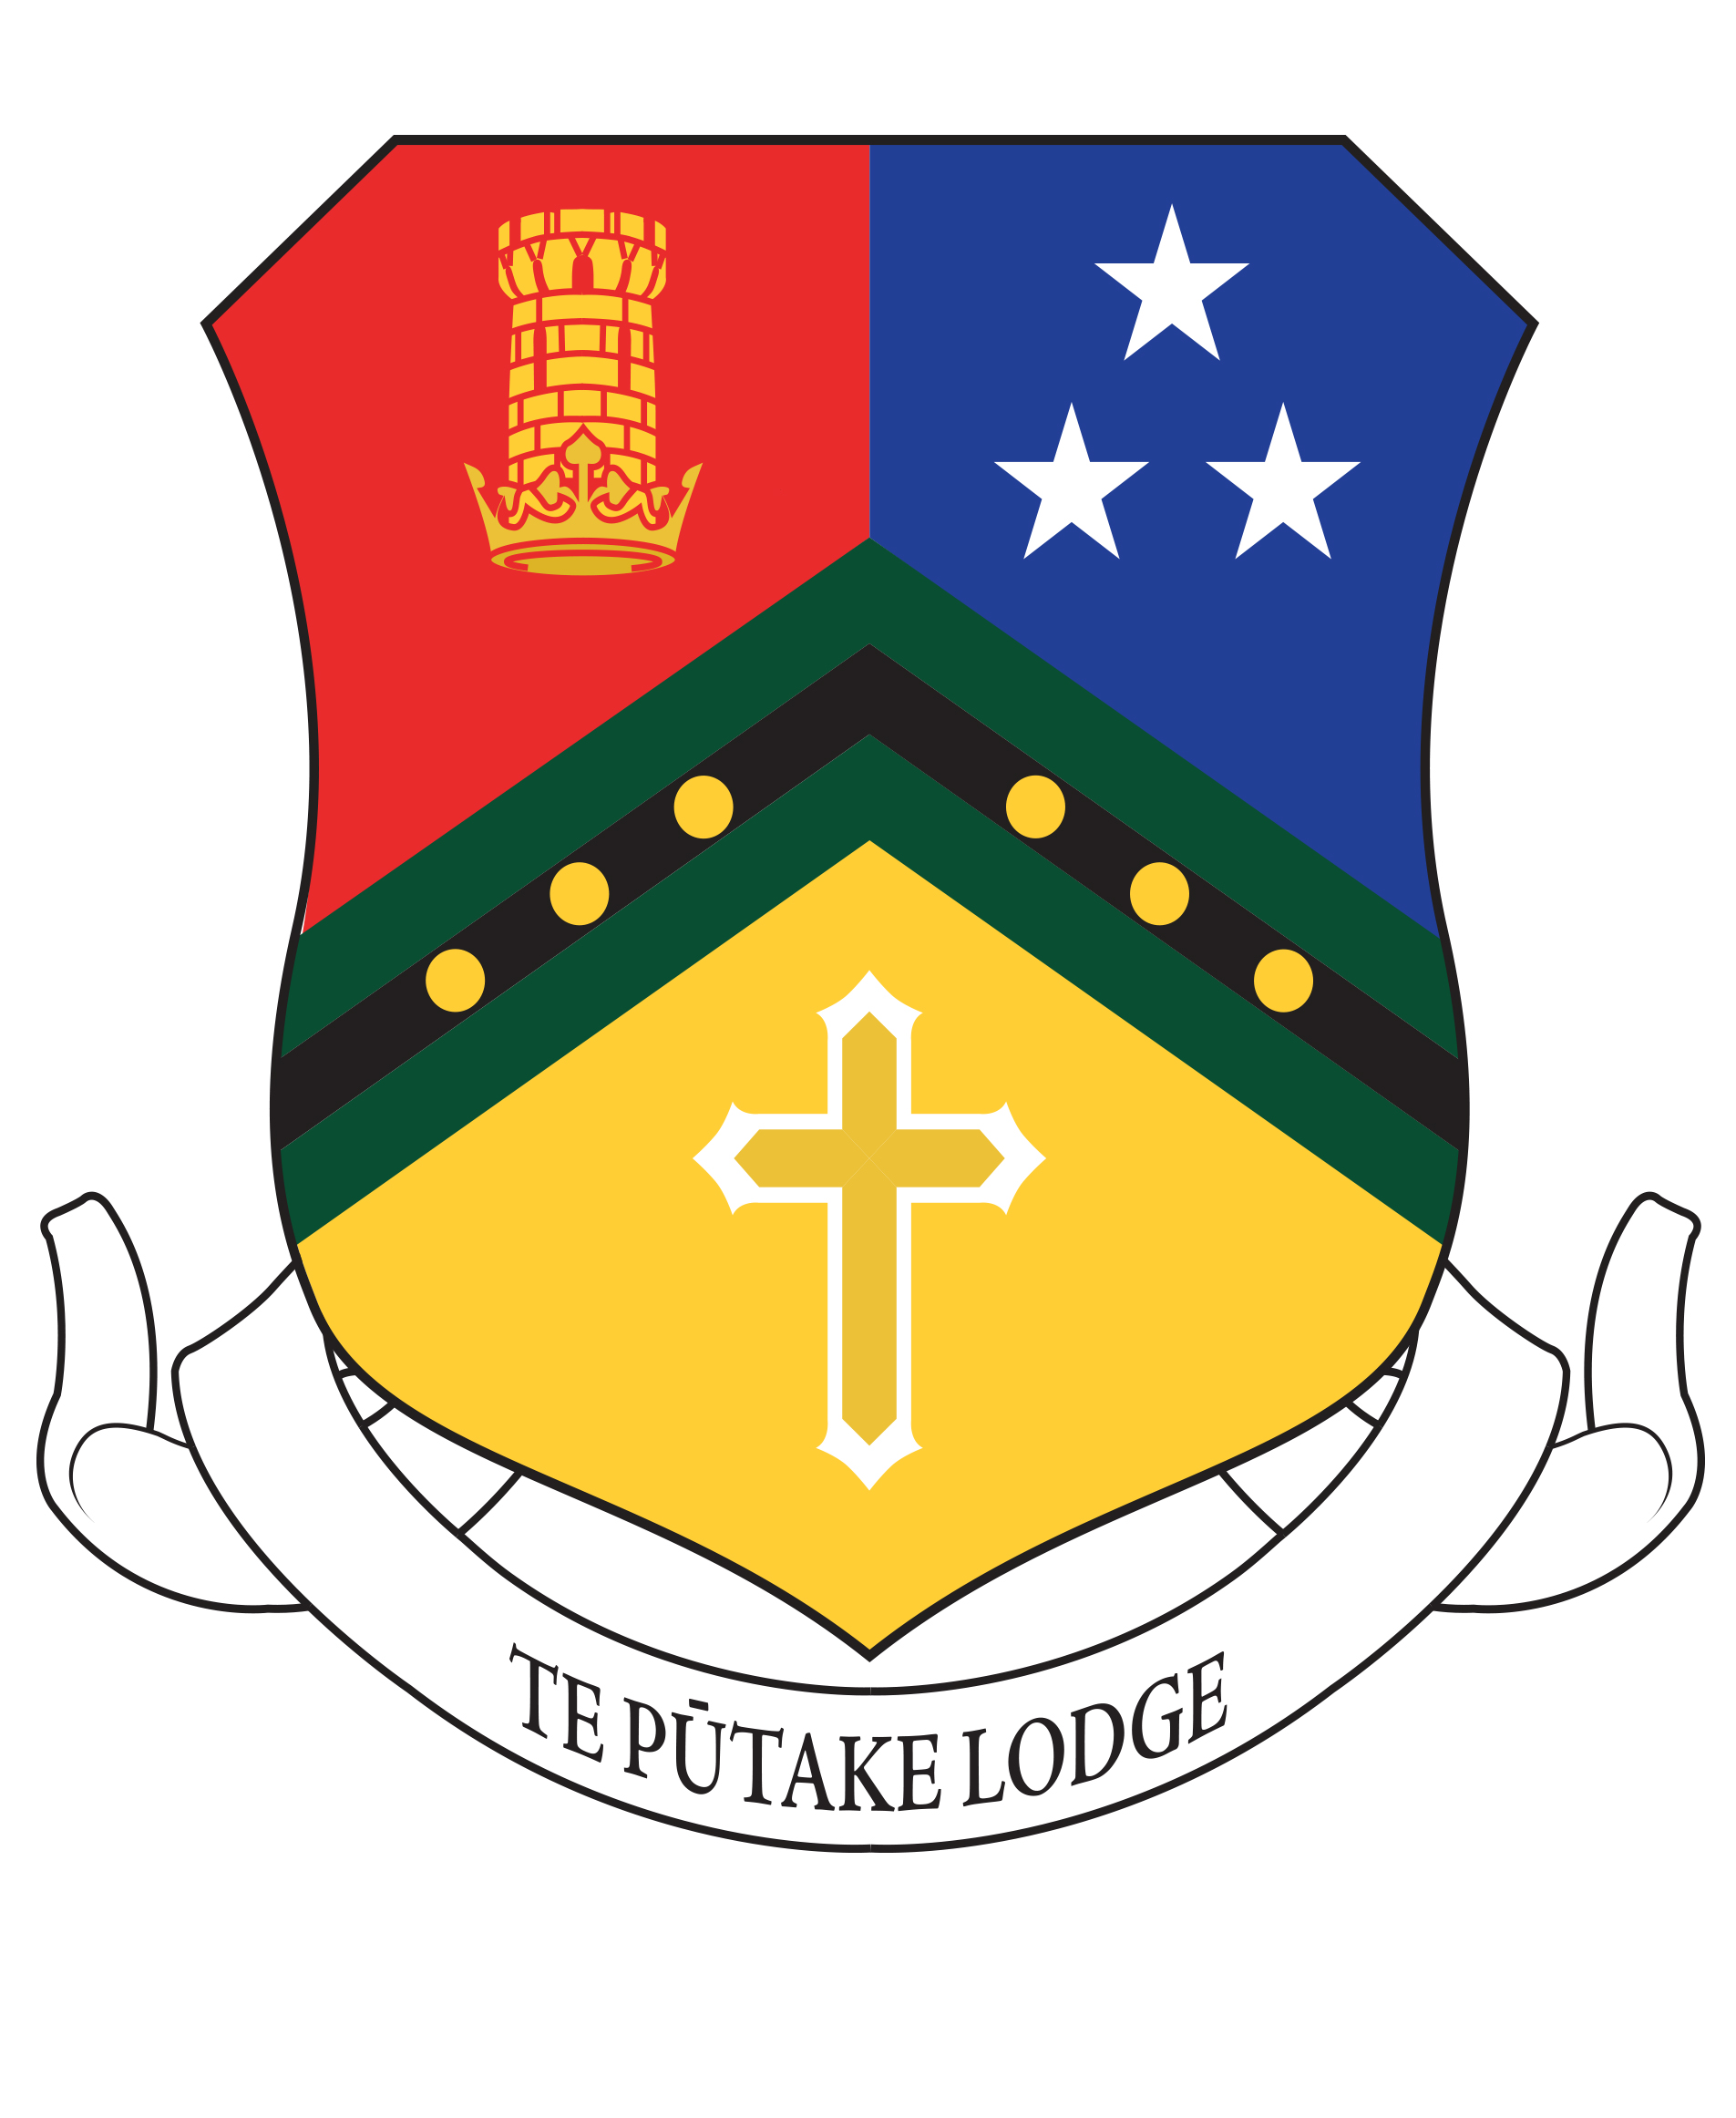 02030112 Our Houses Te Putake Lodge Shield